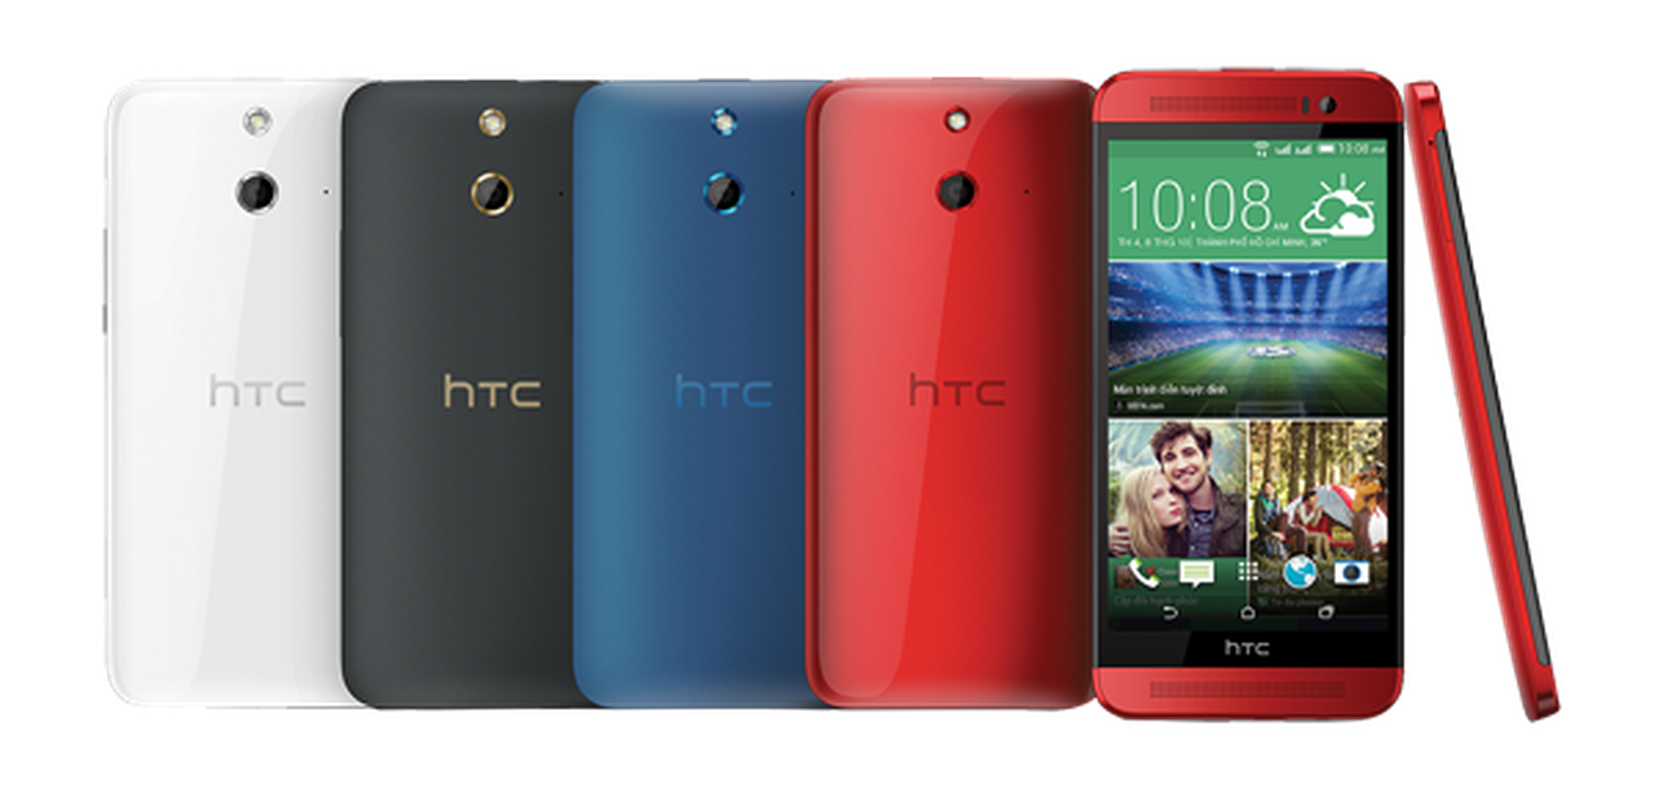 Dien thoai HTC One E8 Dual khung nhat cua HTC ra mat